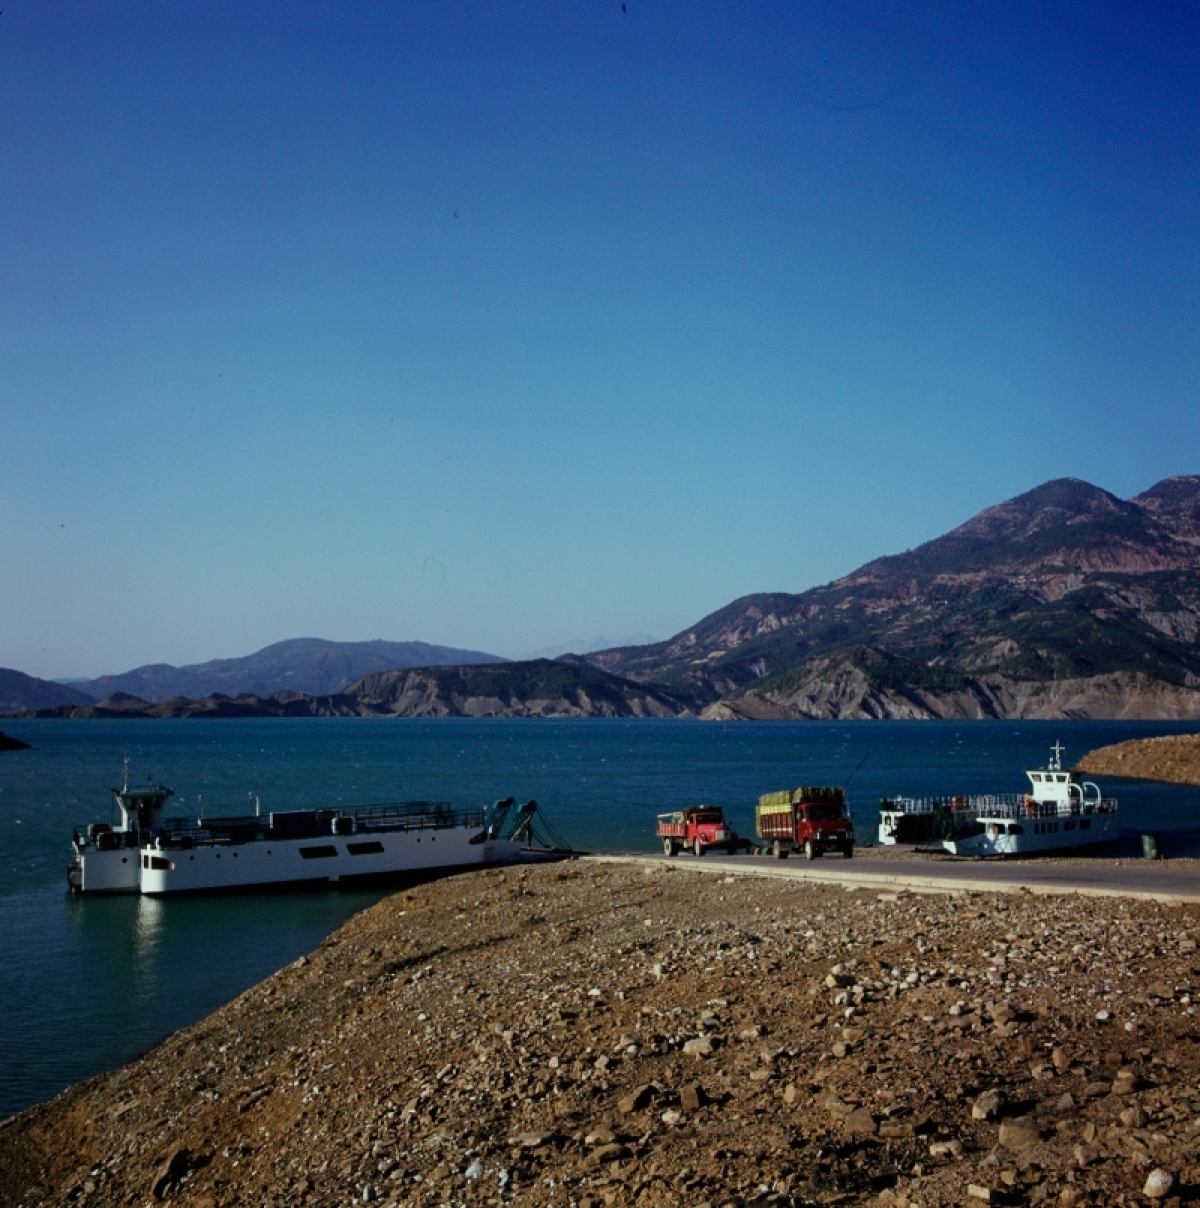 Λίμνη Κρεμαστών: Όταν είχε ferry boat αντί γέφυρας